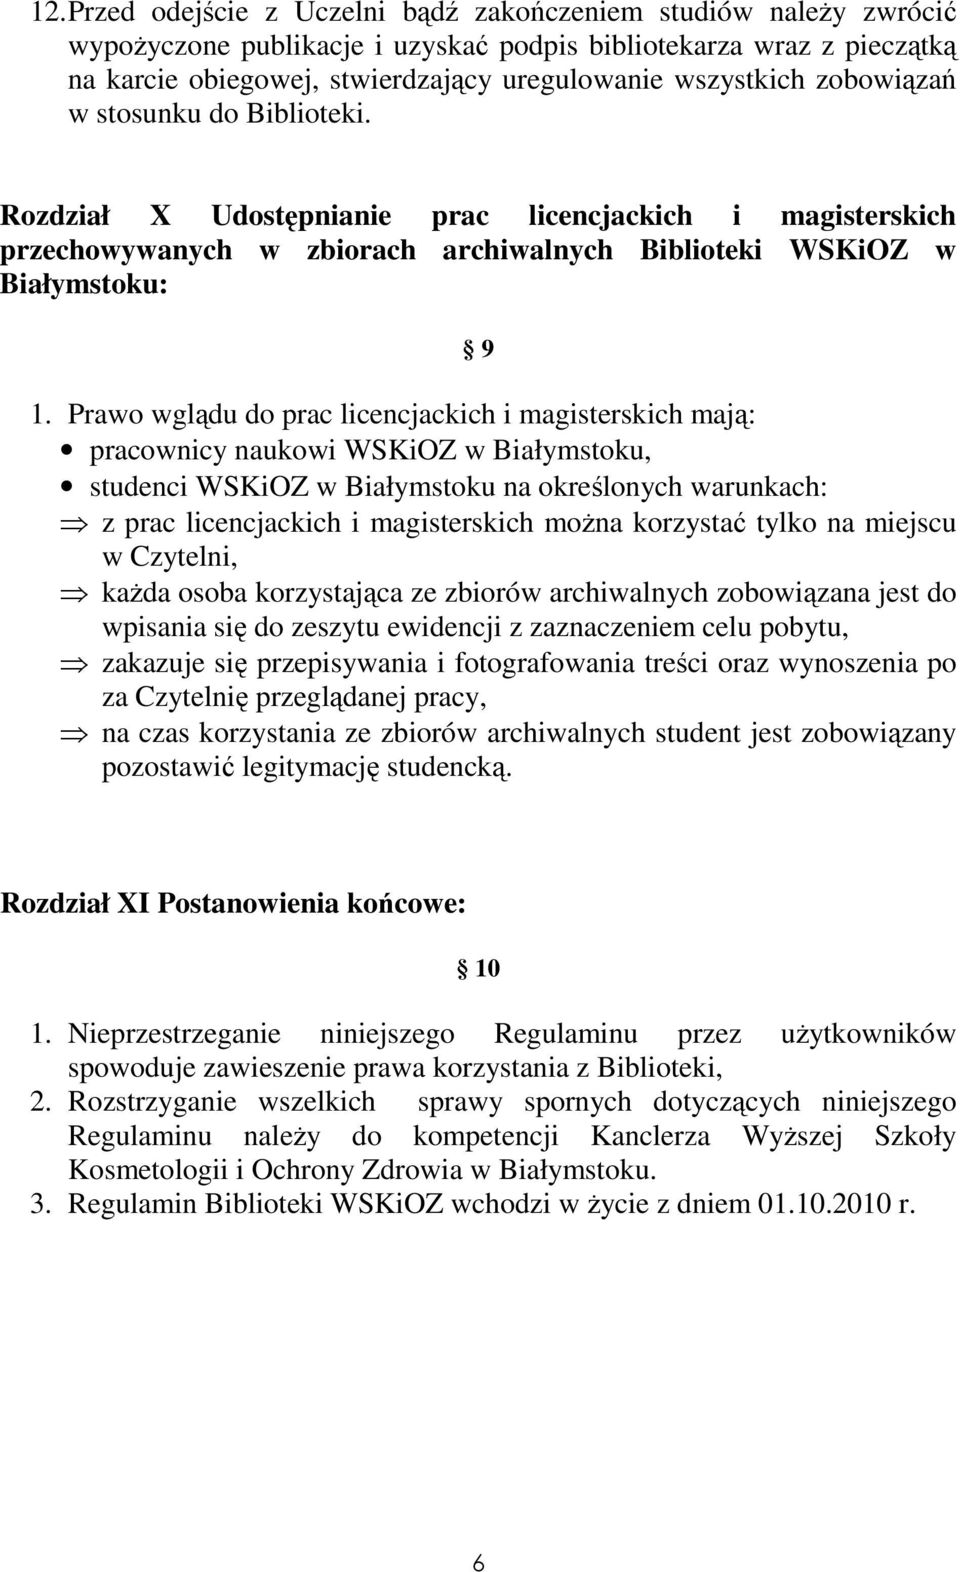 Prawo wglądu do prac licencjackich i magisterskich mają: pracownicy naukowi WSKiOZ w Białymstoku, studenci WSKiOZ w Białymstoku na określonych warunkach: z prac licencjackich i magisterskich można